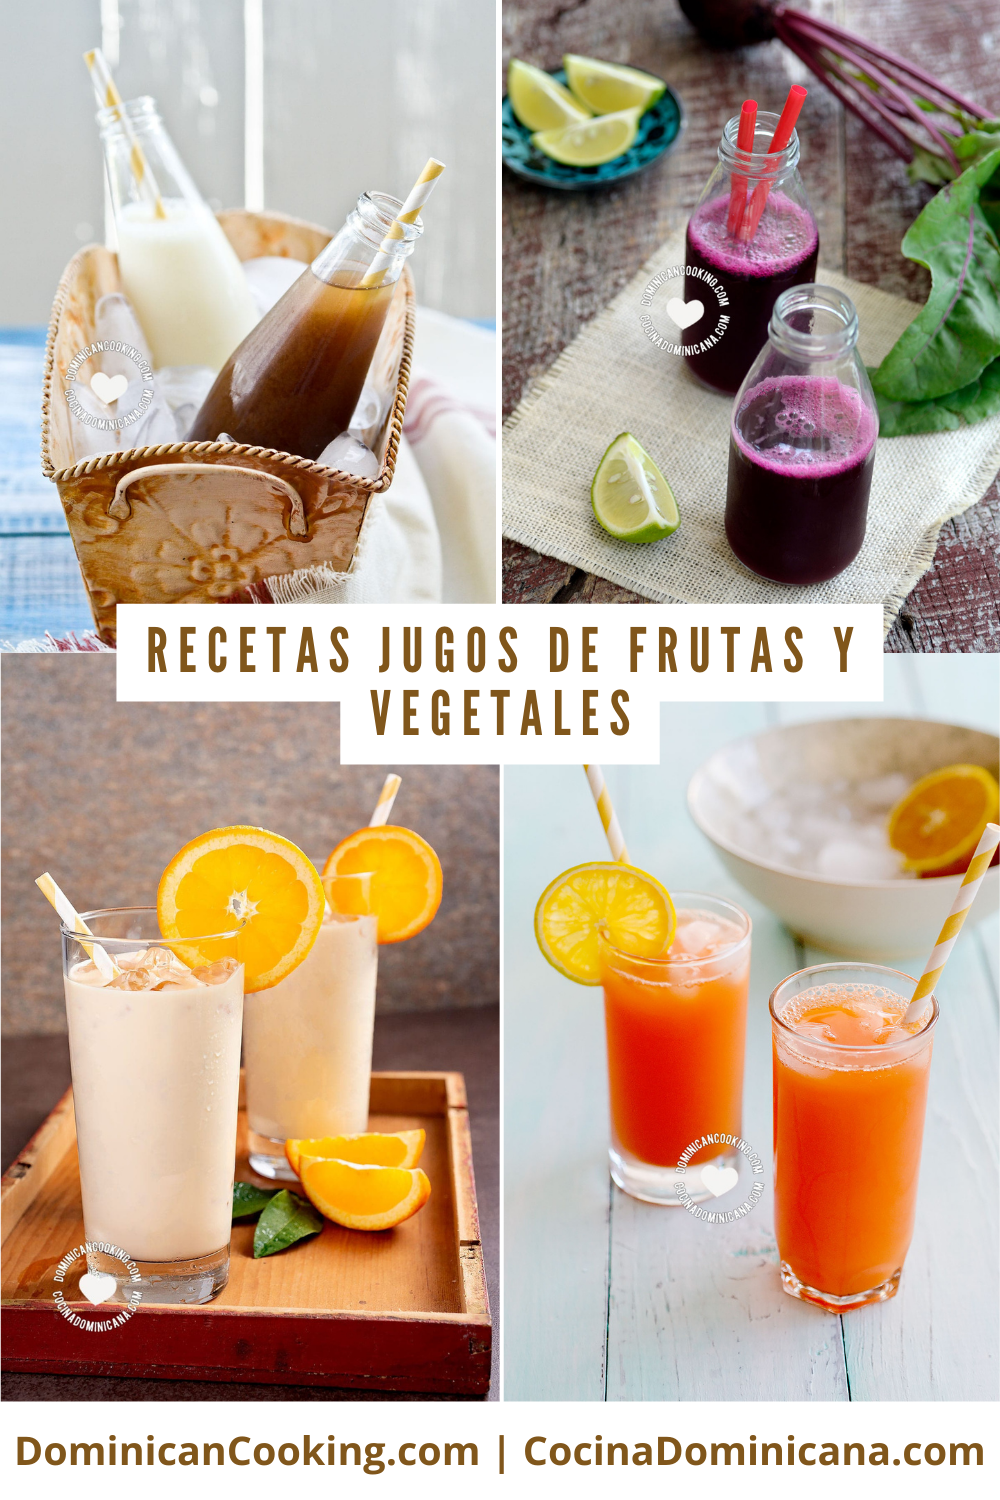 Recetas de jugos de frutas y vegetales.